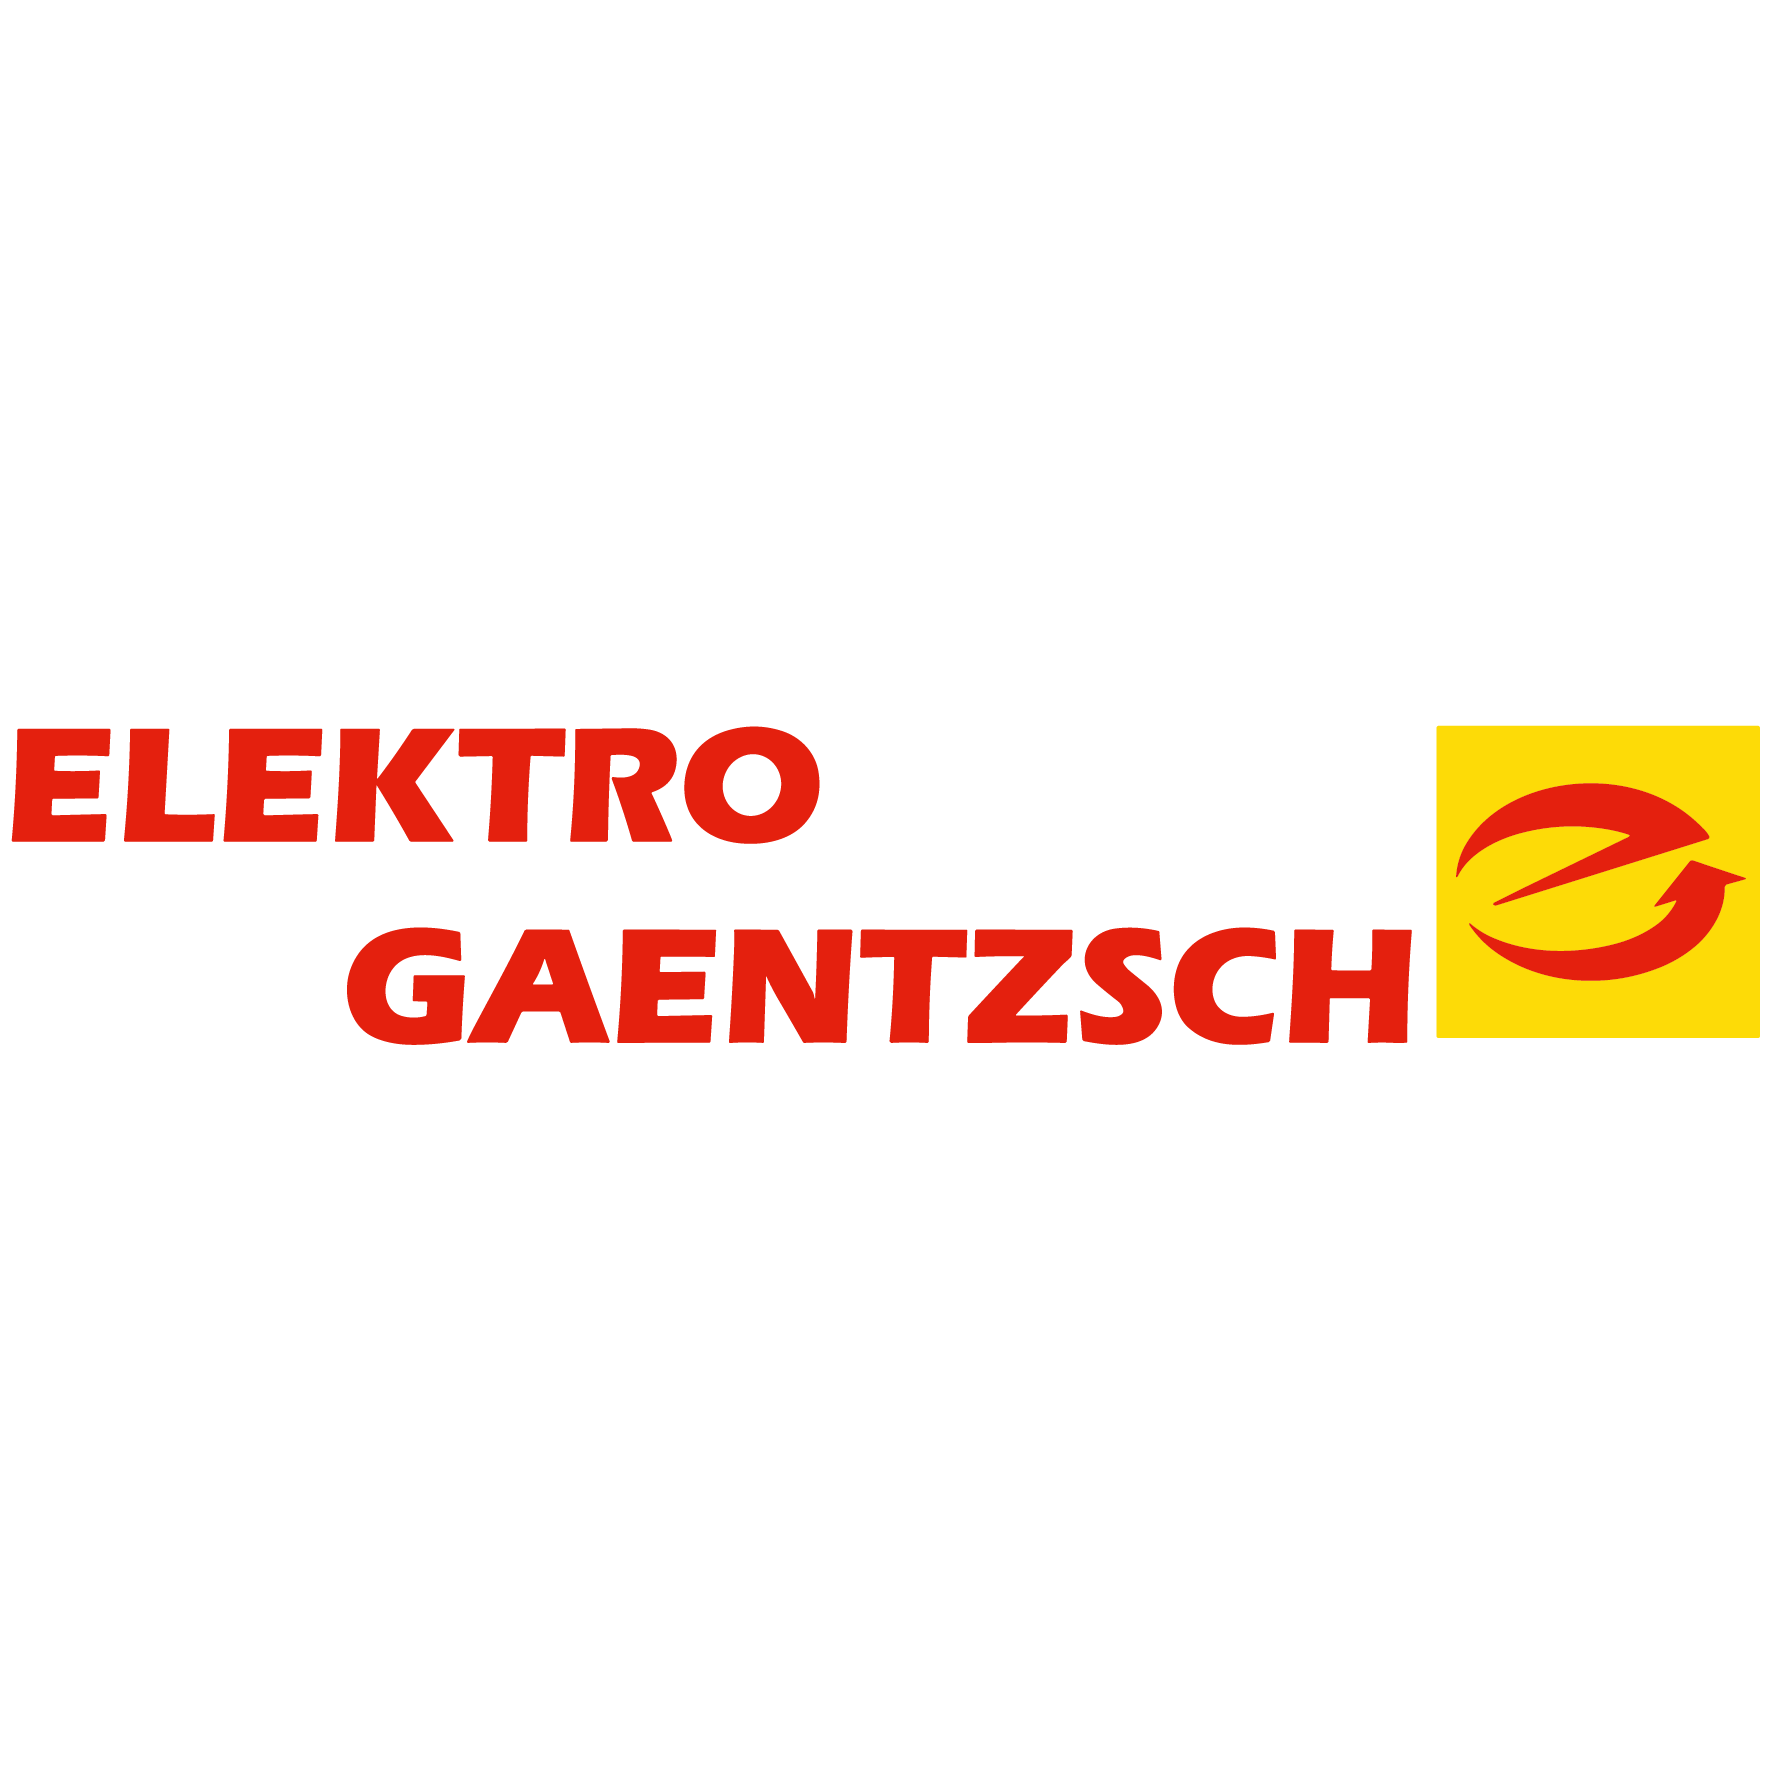 Elektro-Gaentzsch e.K in Brakel in Westfalen - Logo